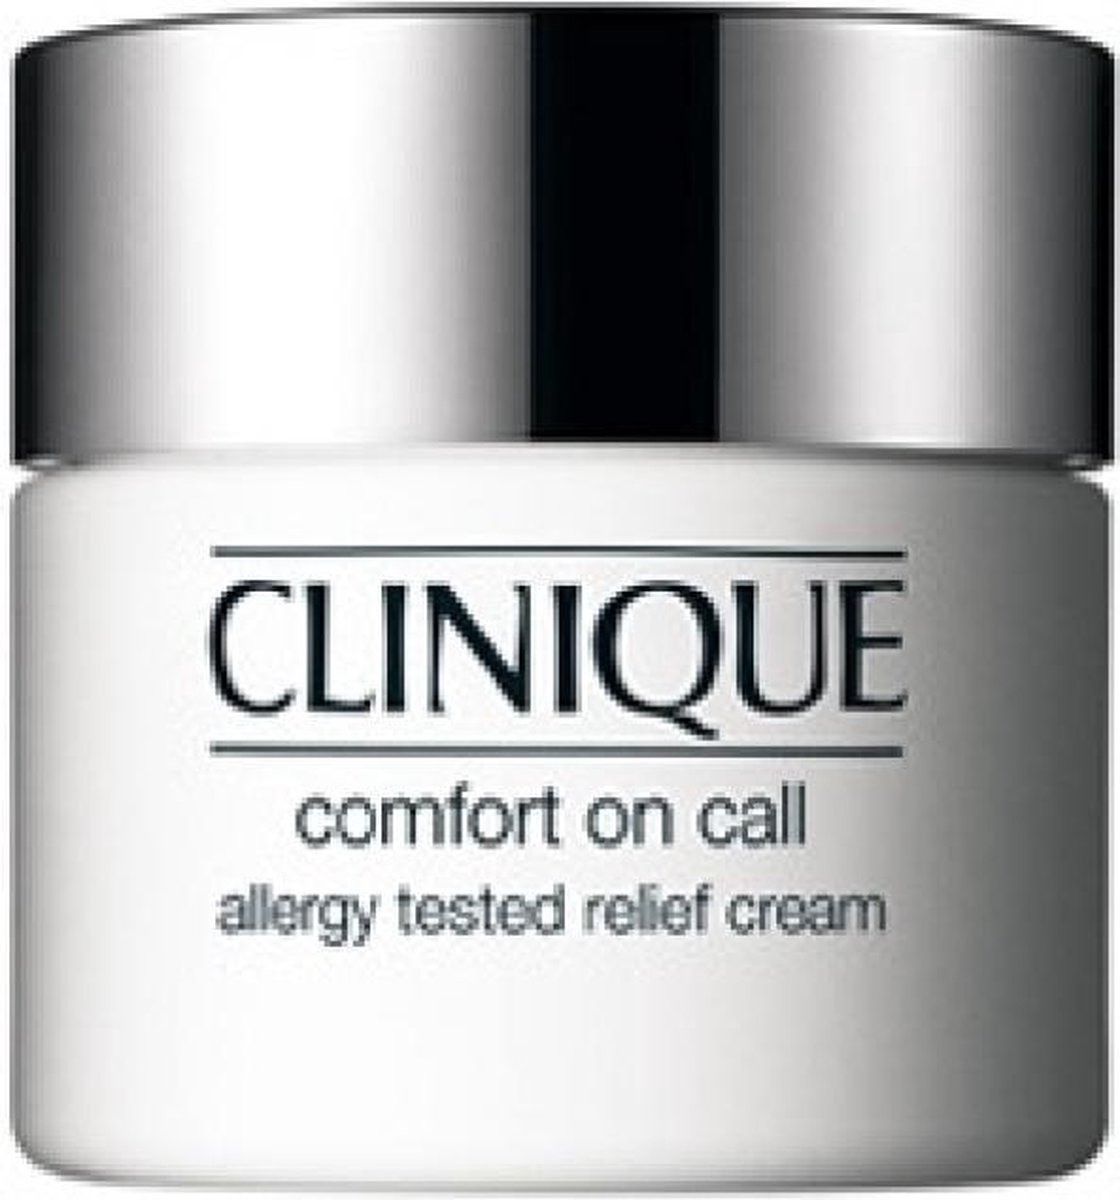 Clinique Comfort Call Allergy Relief Cream gezichtsreiniging & reiniging crème bol.com